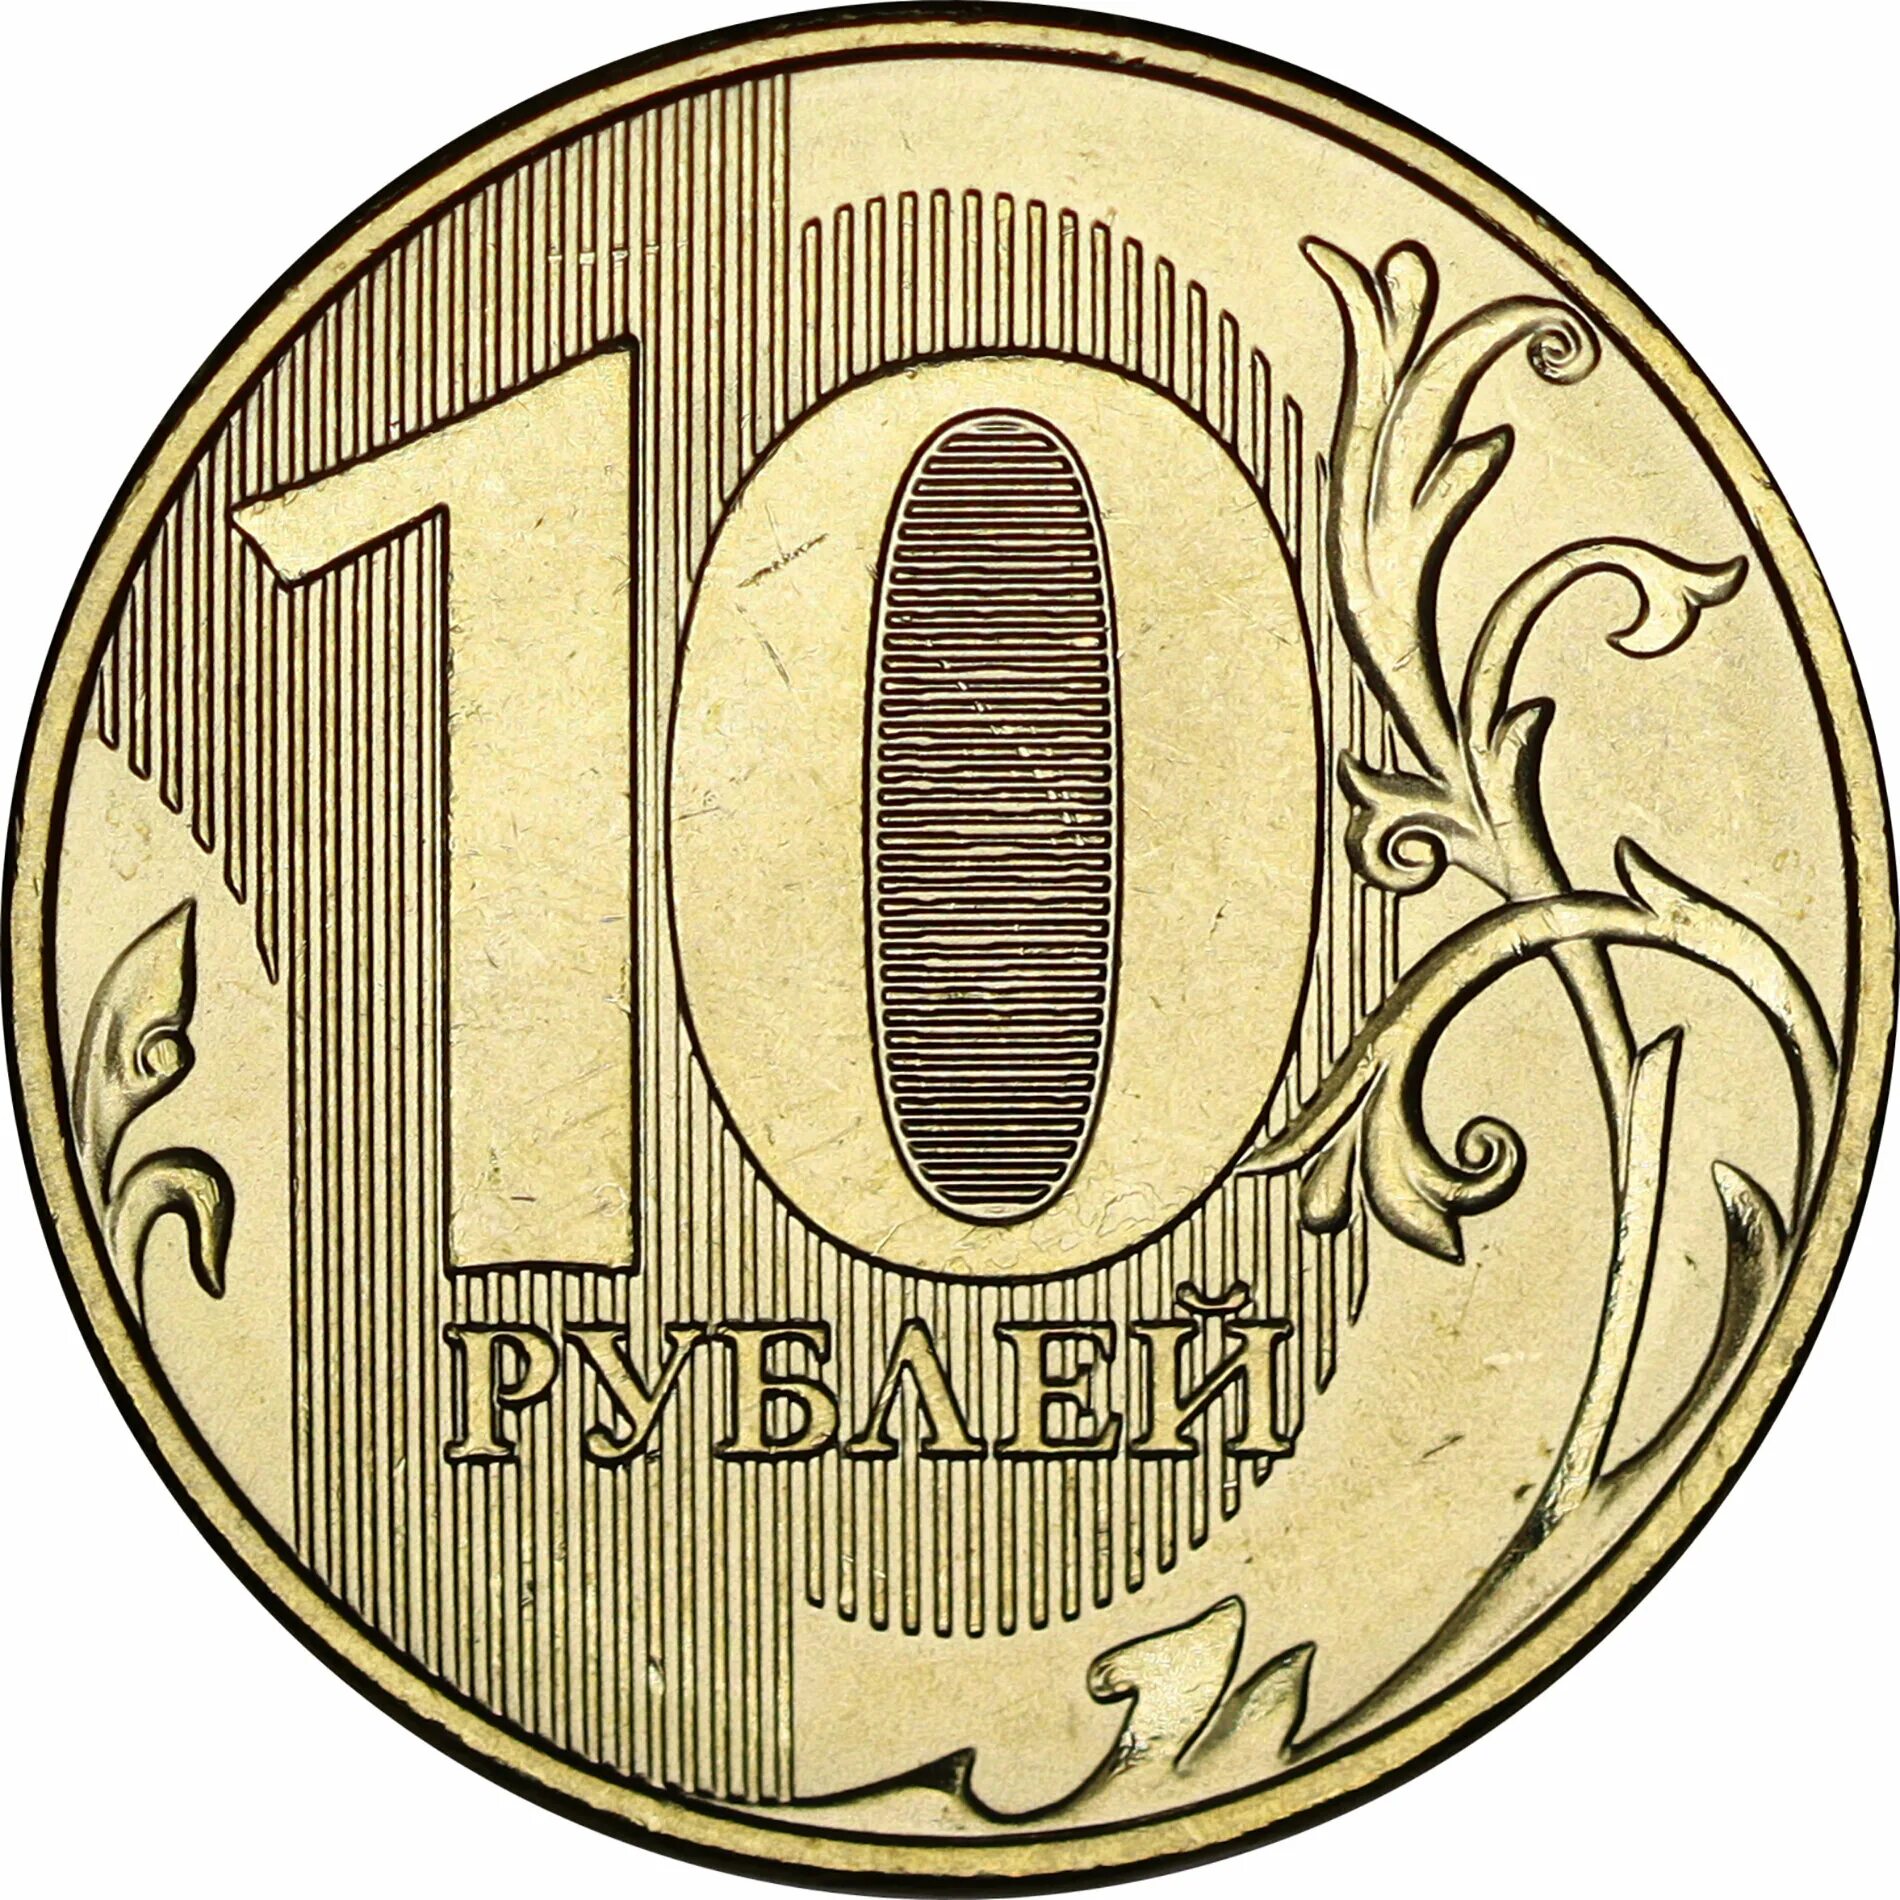 10 rubles for children #12